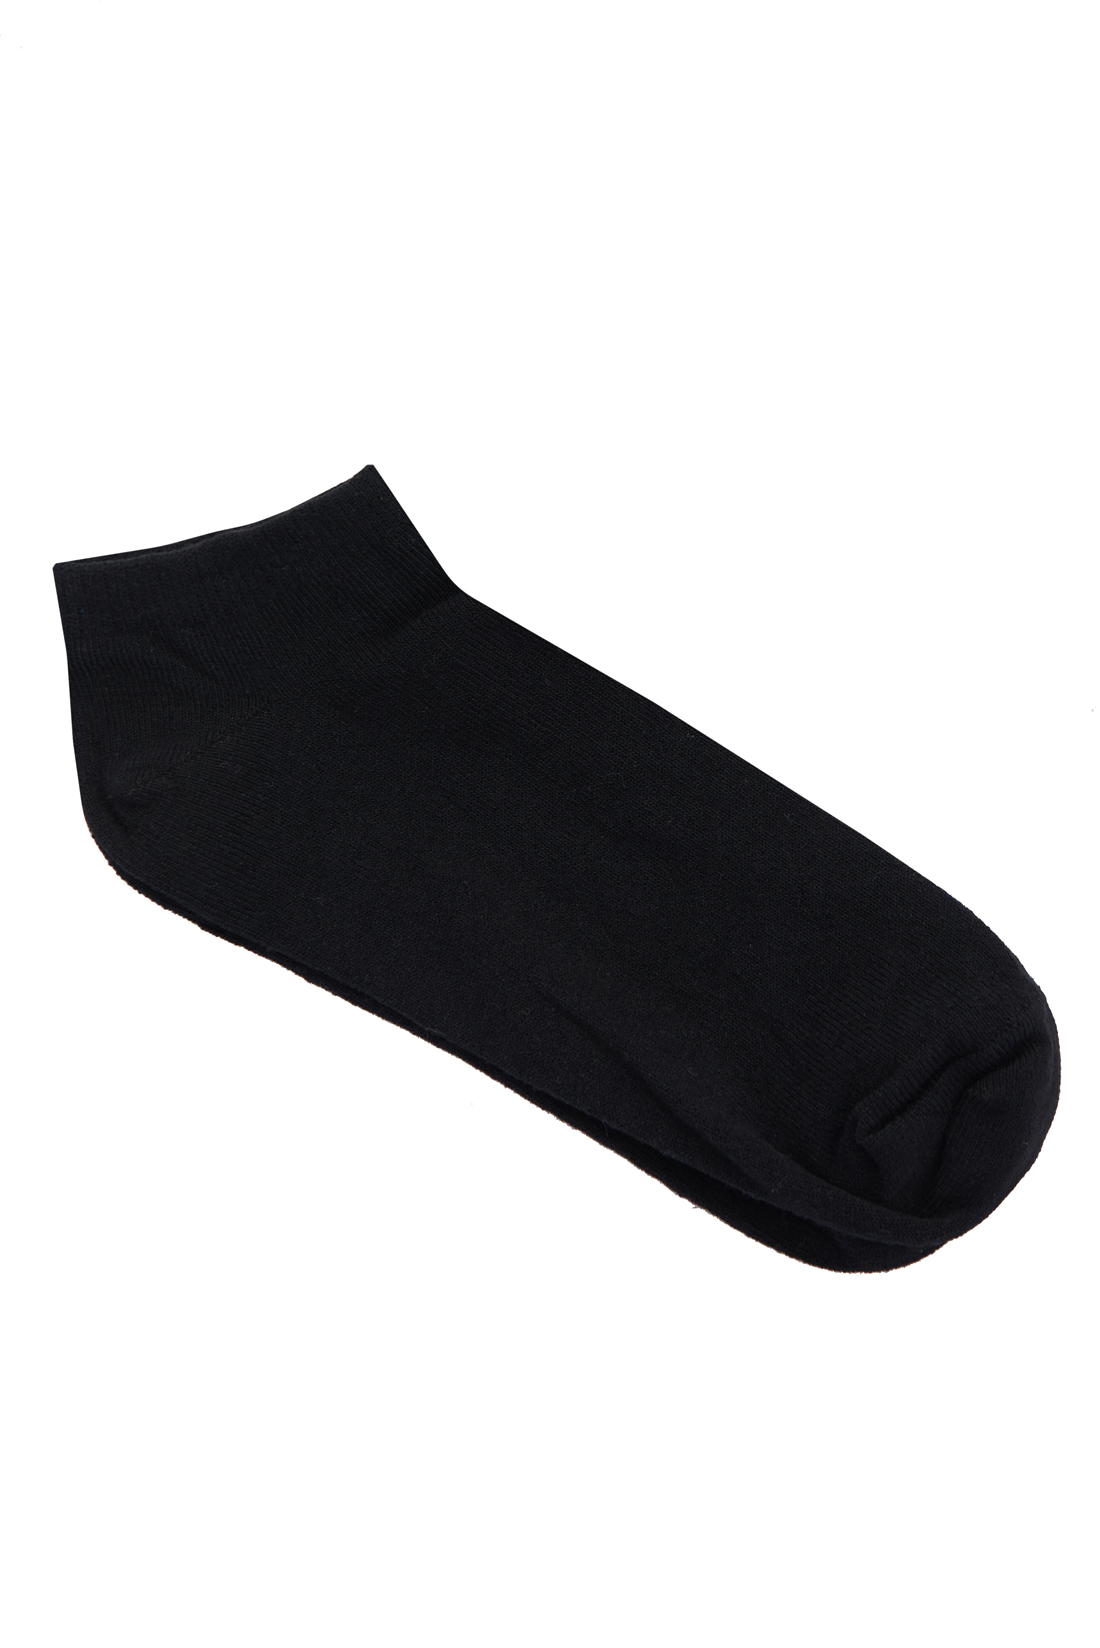 Укороченные чёрные носки (арт. baon B398034), размер 35/37, цвет черный